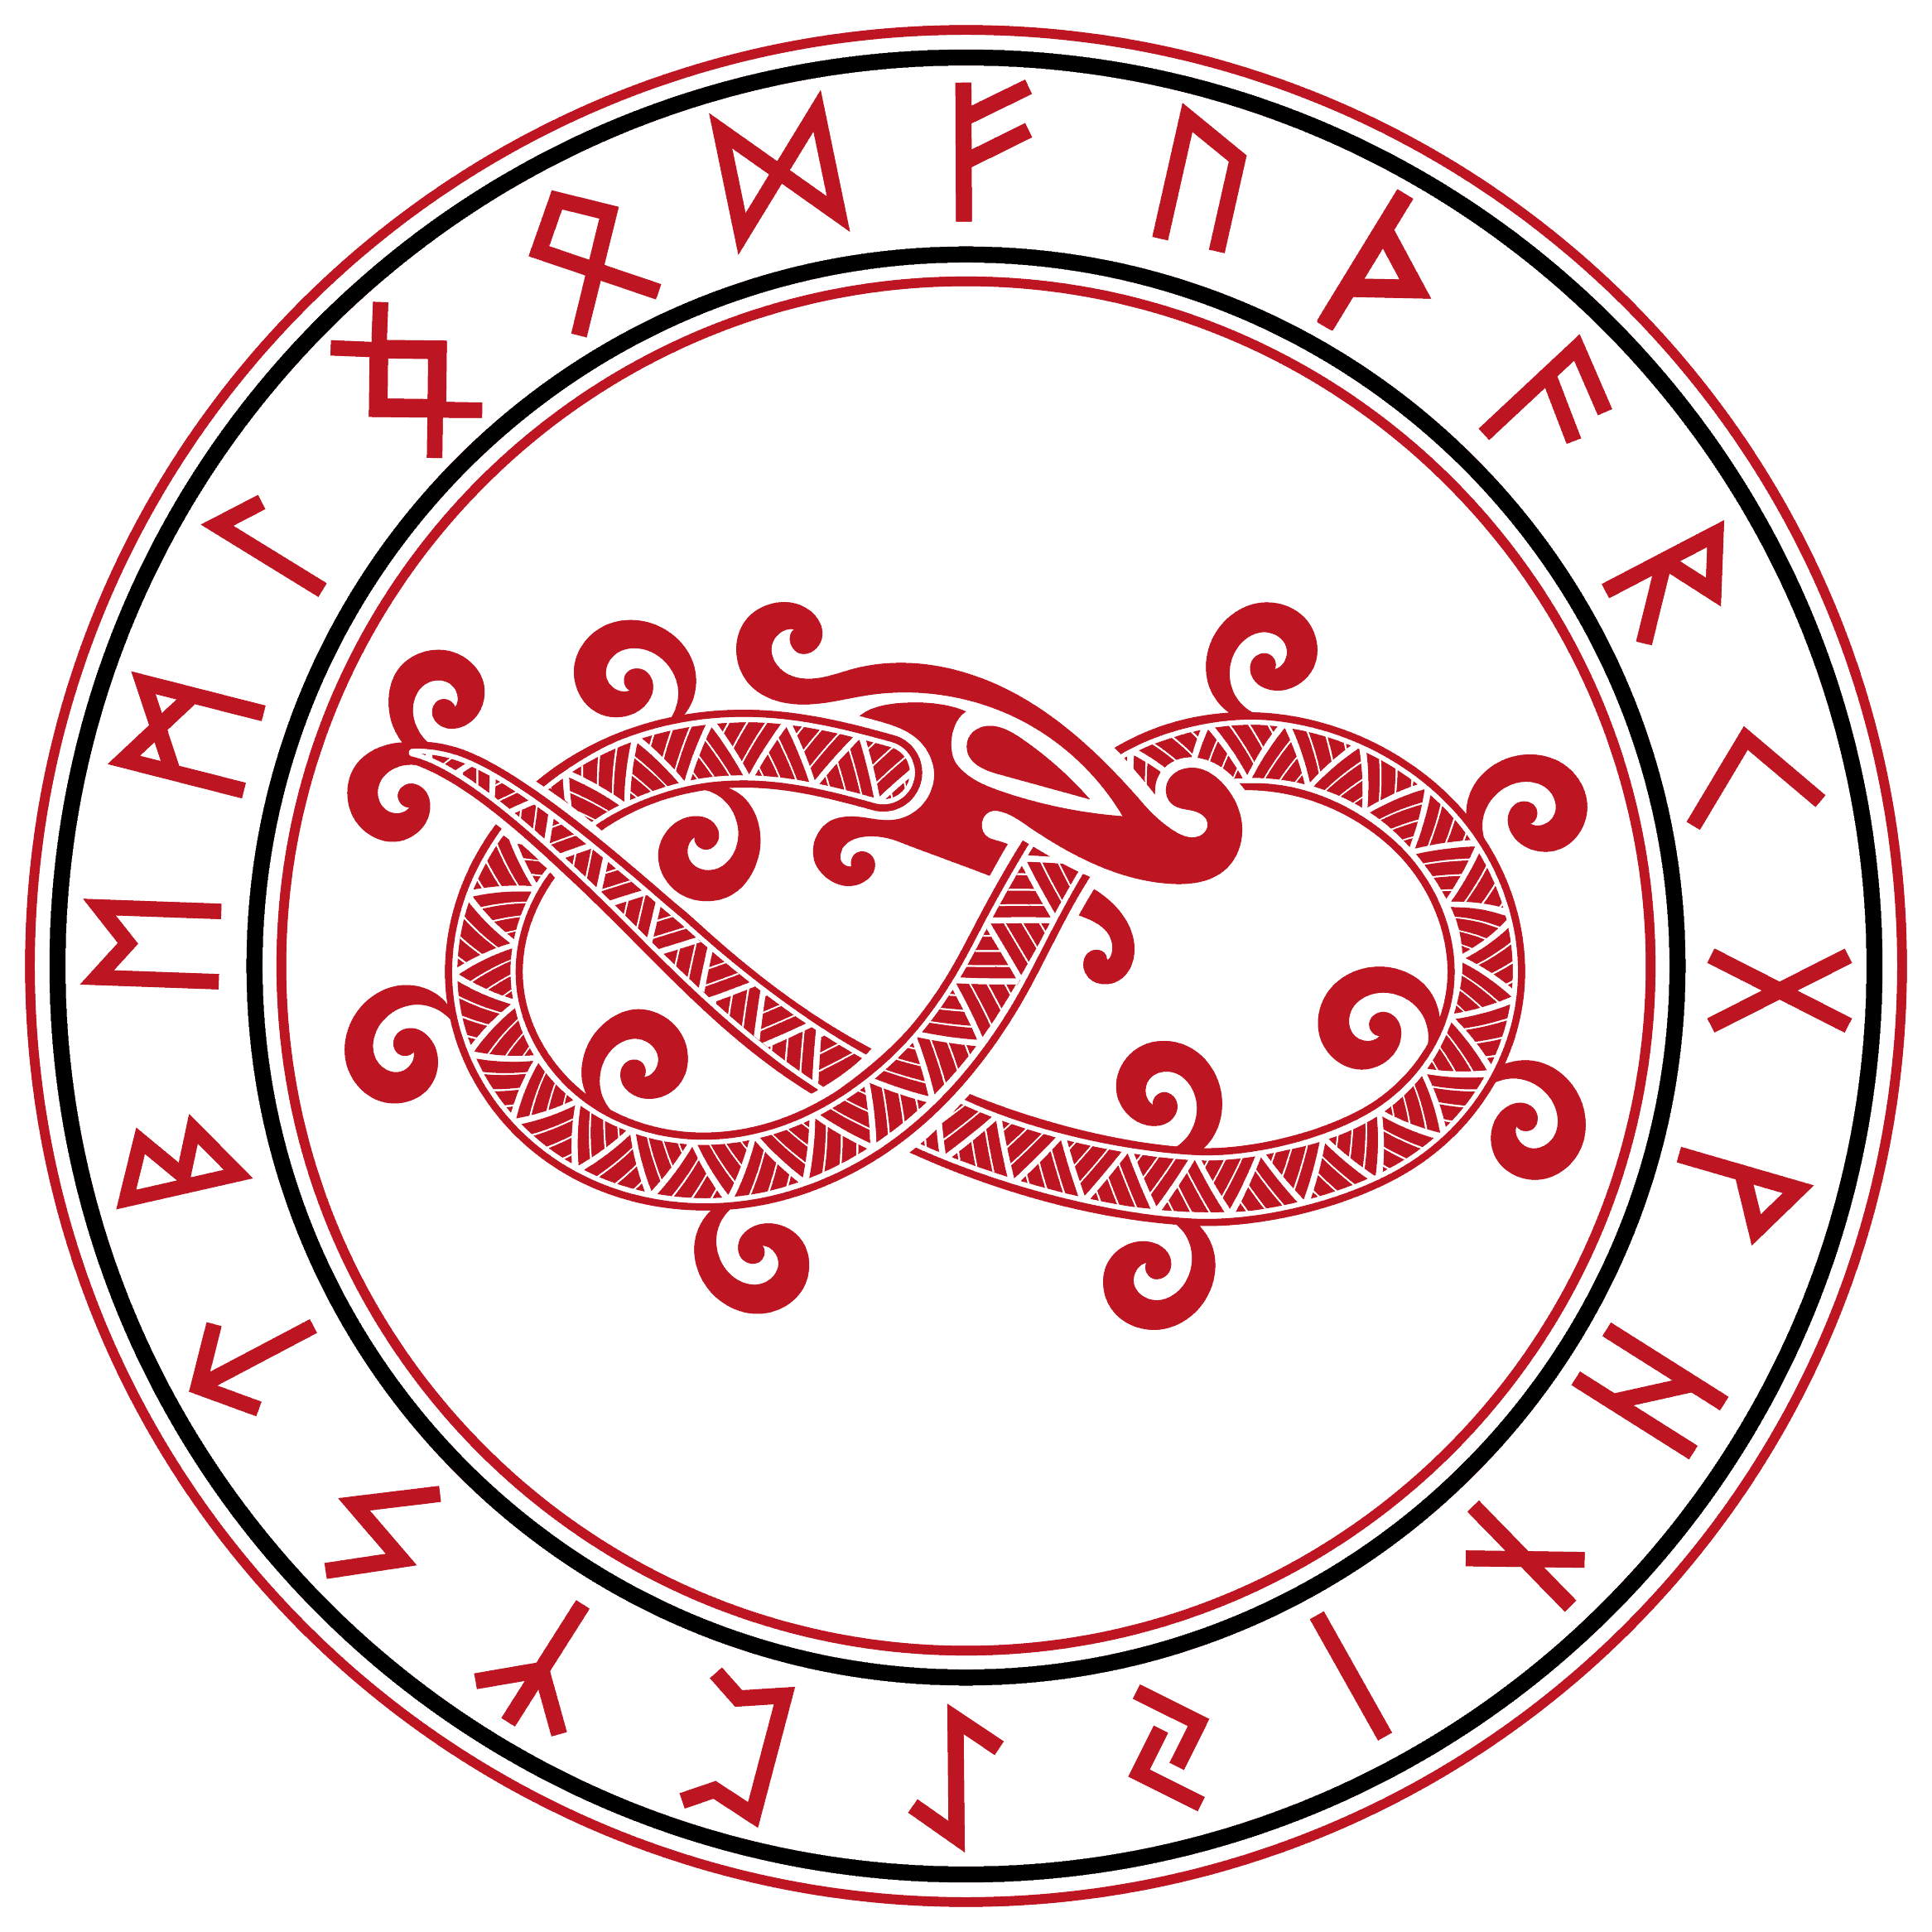 Jormungandr, la serpiente del mundo asociada con el símbolo de Ouroboros en la mitología nórdica